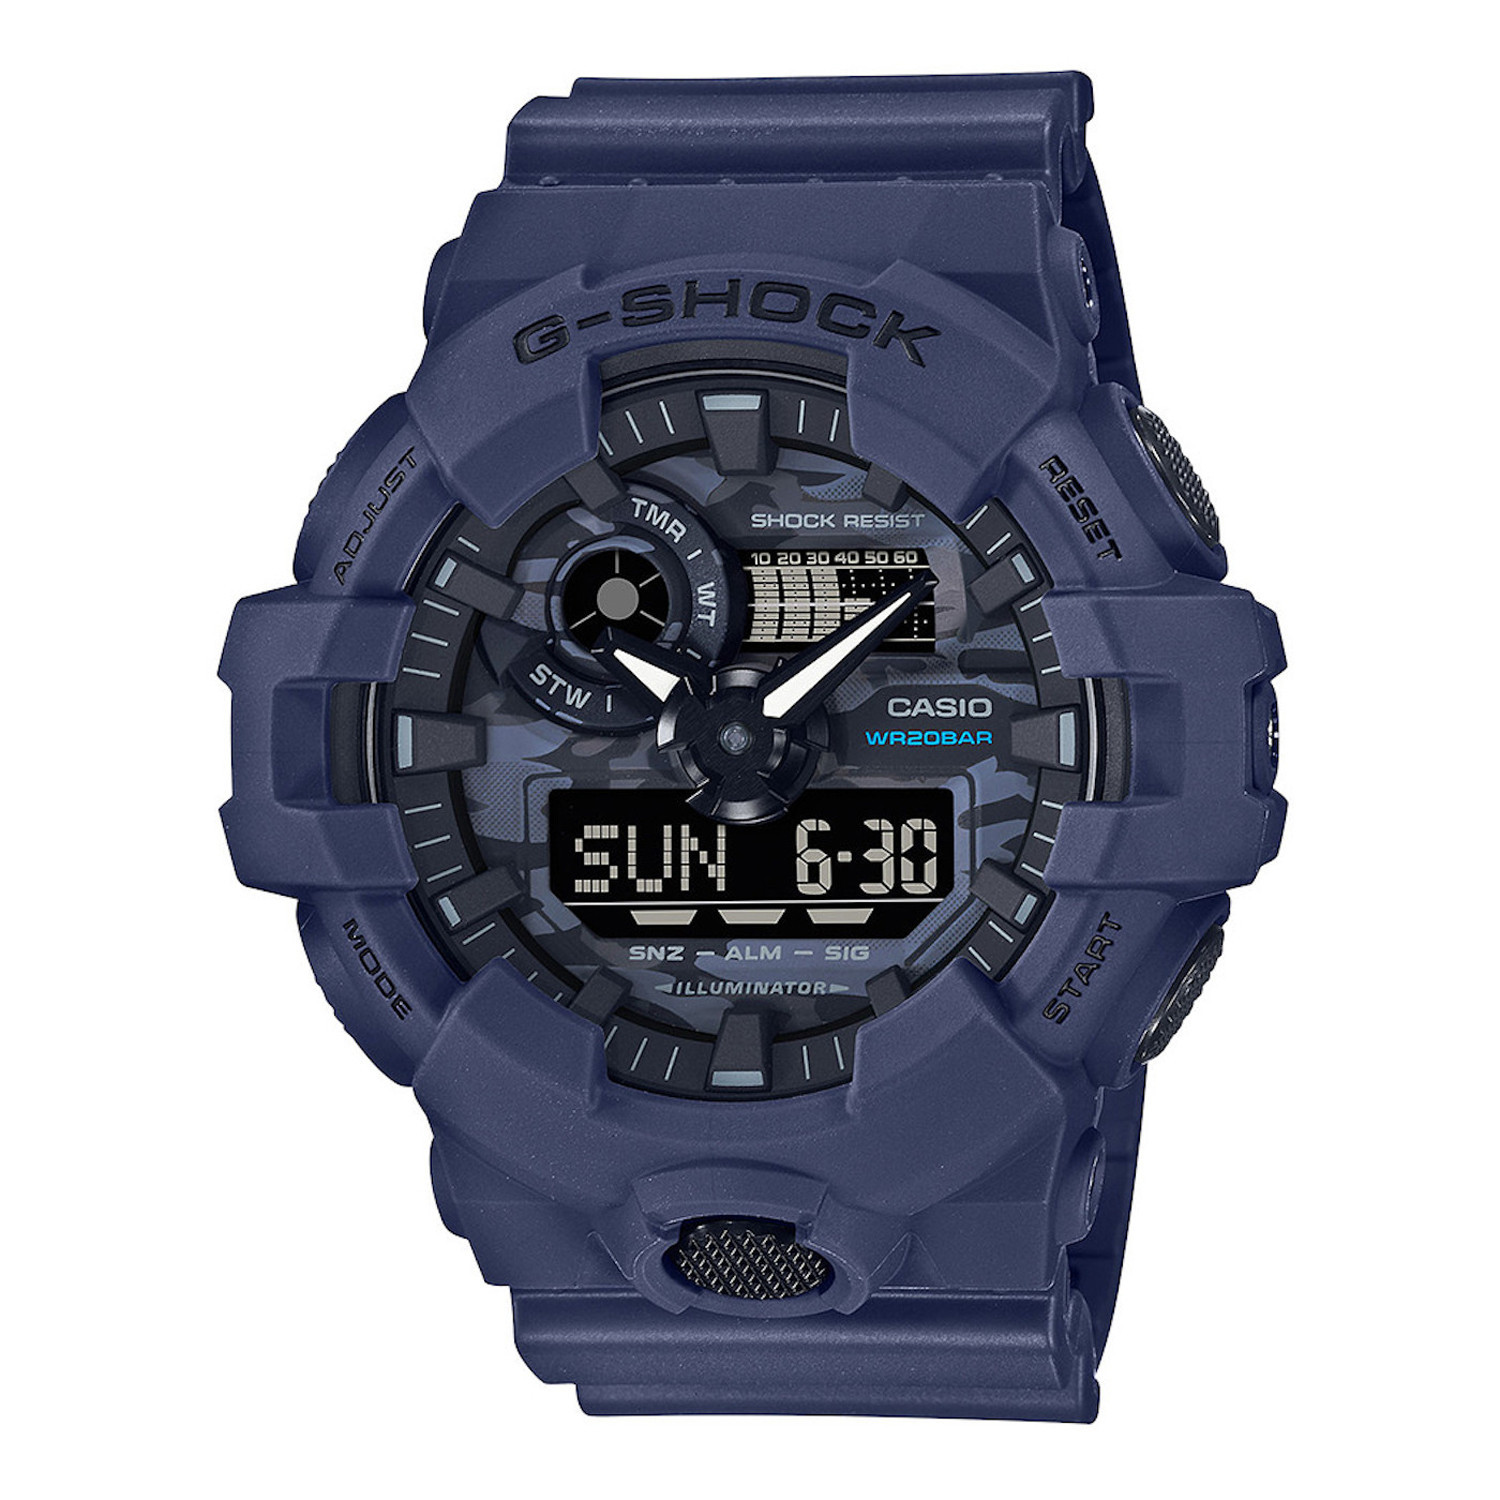 Montre Casio G-Shock analogique/numérique bleue